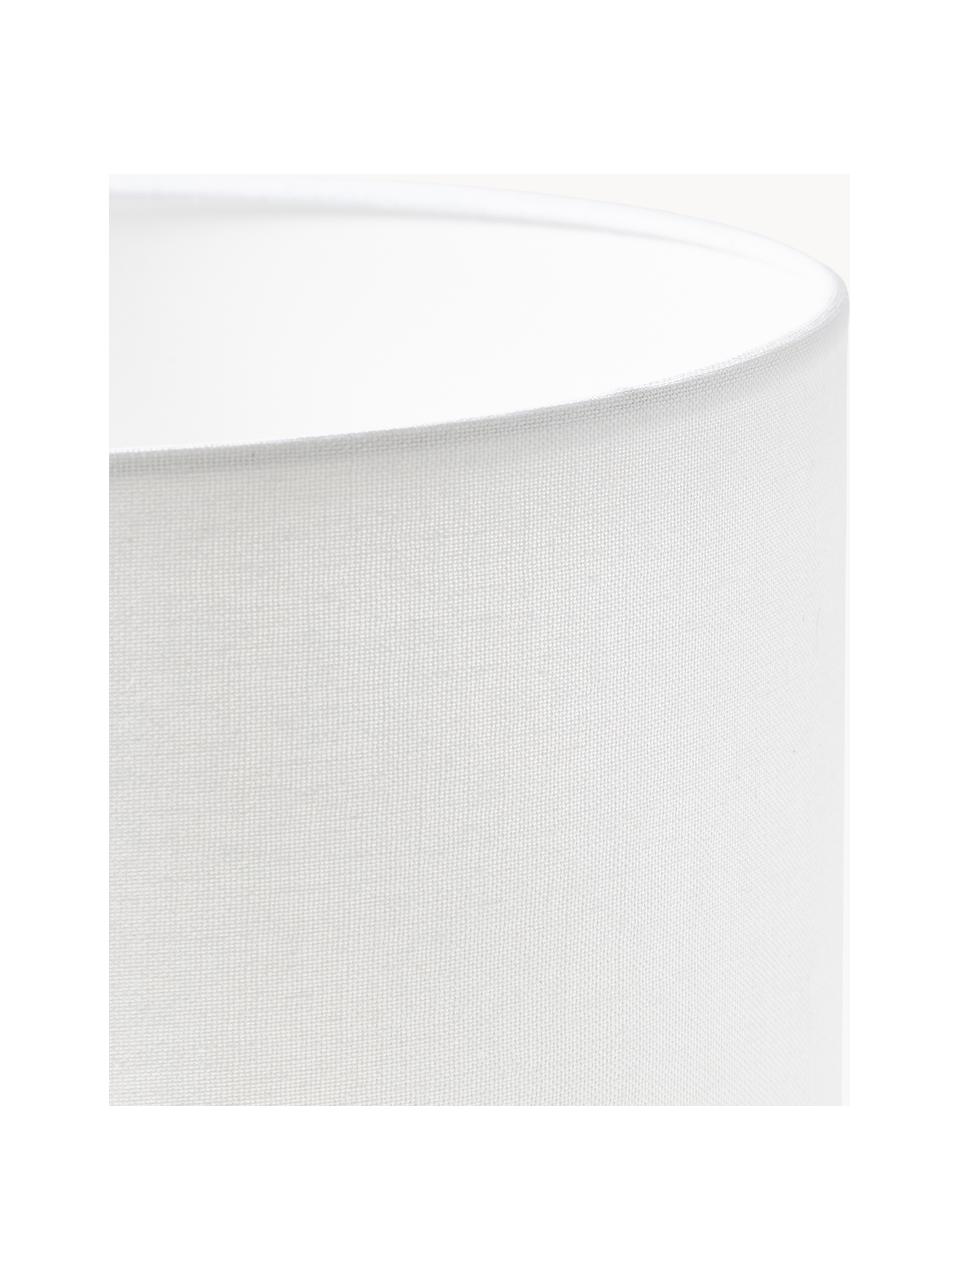 Ručne vyrobená stolová lampa s betónovým podstavcom Ike, Sivá, biela, Ø 30 x V 45 cm